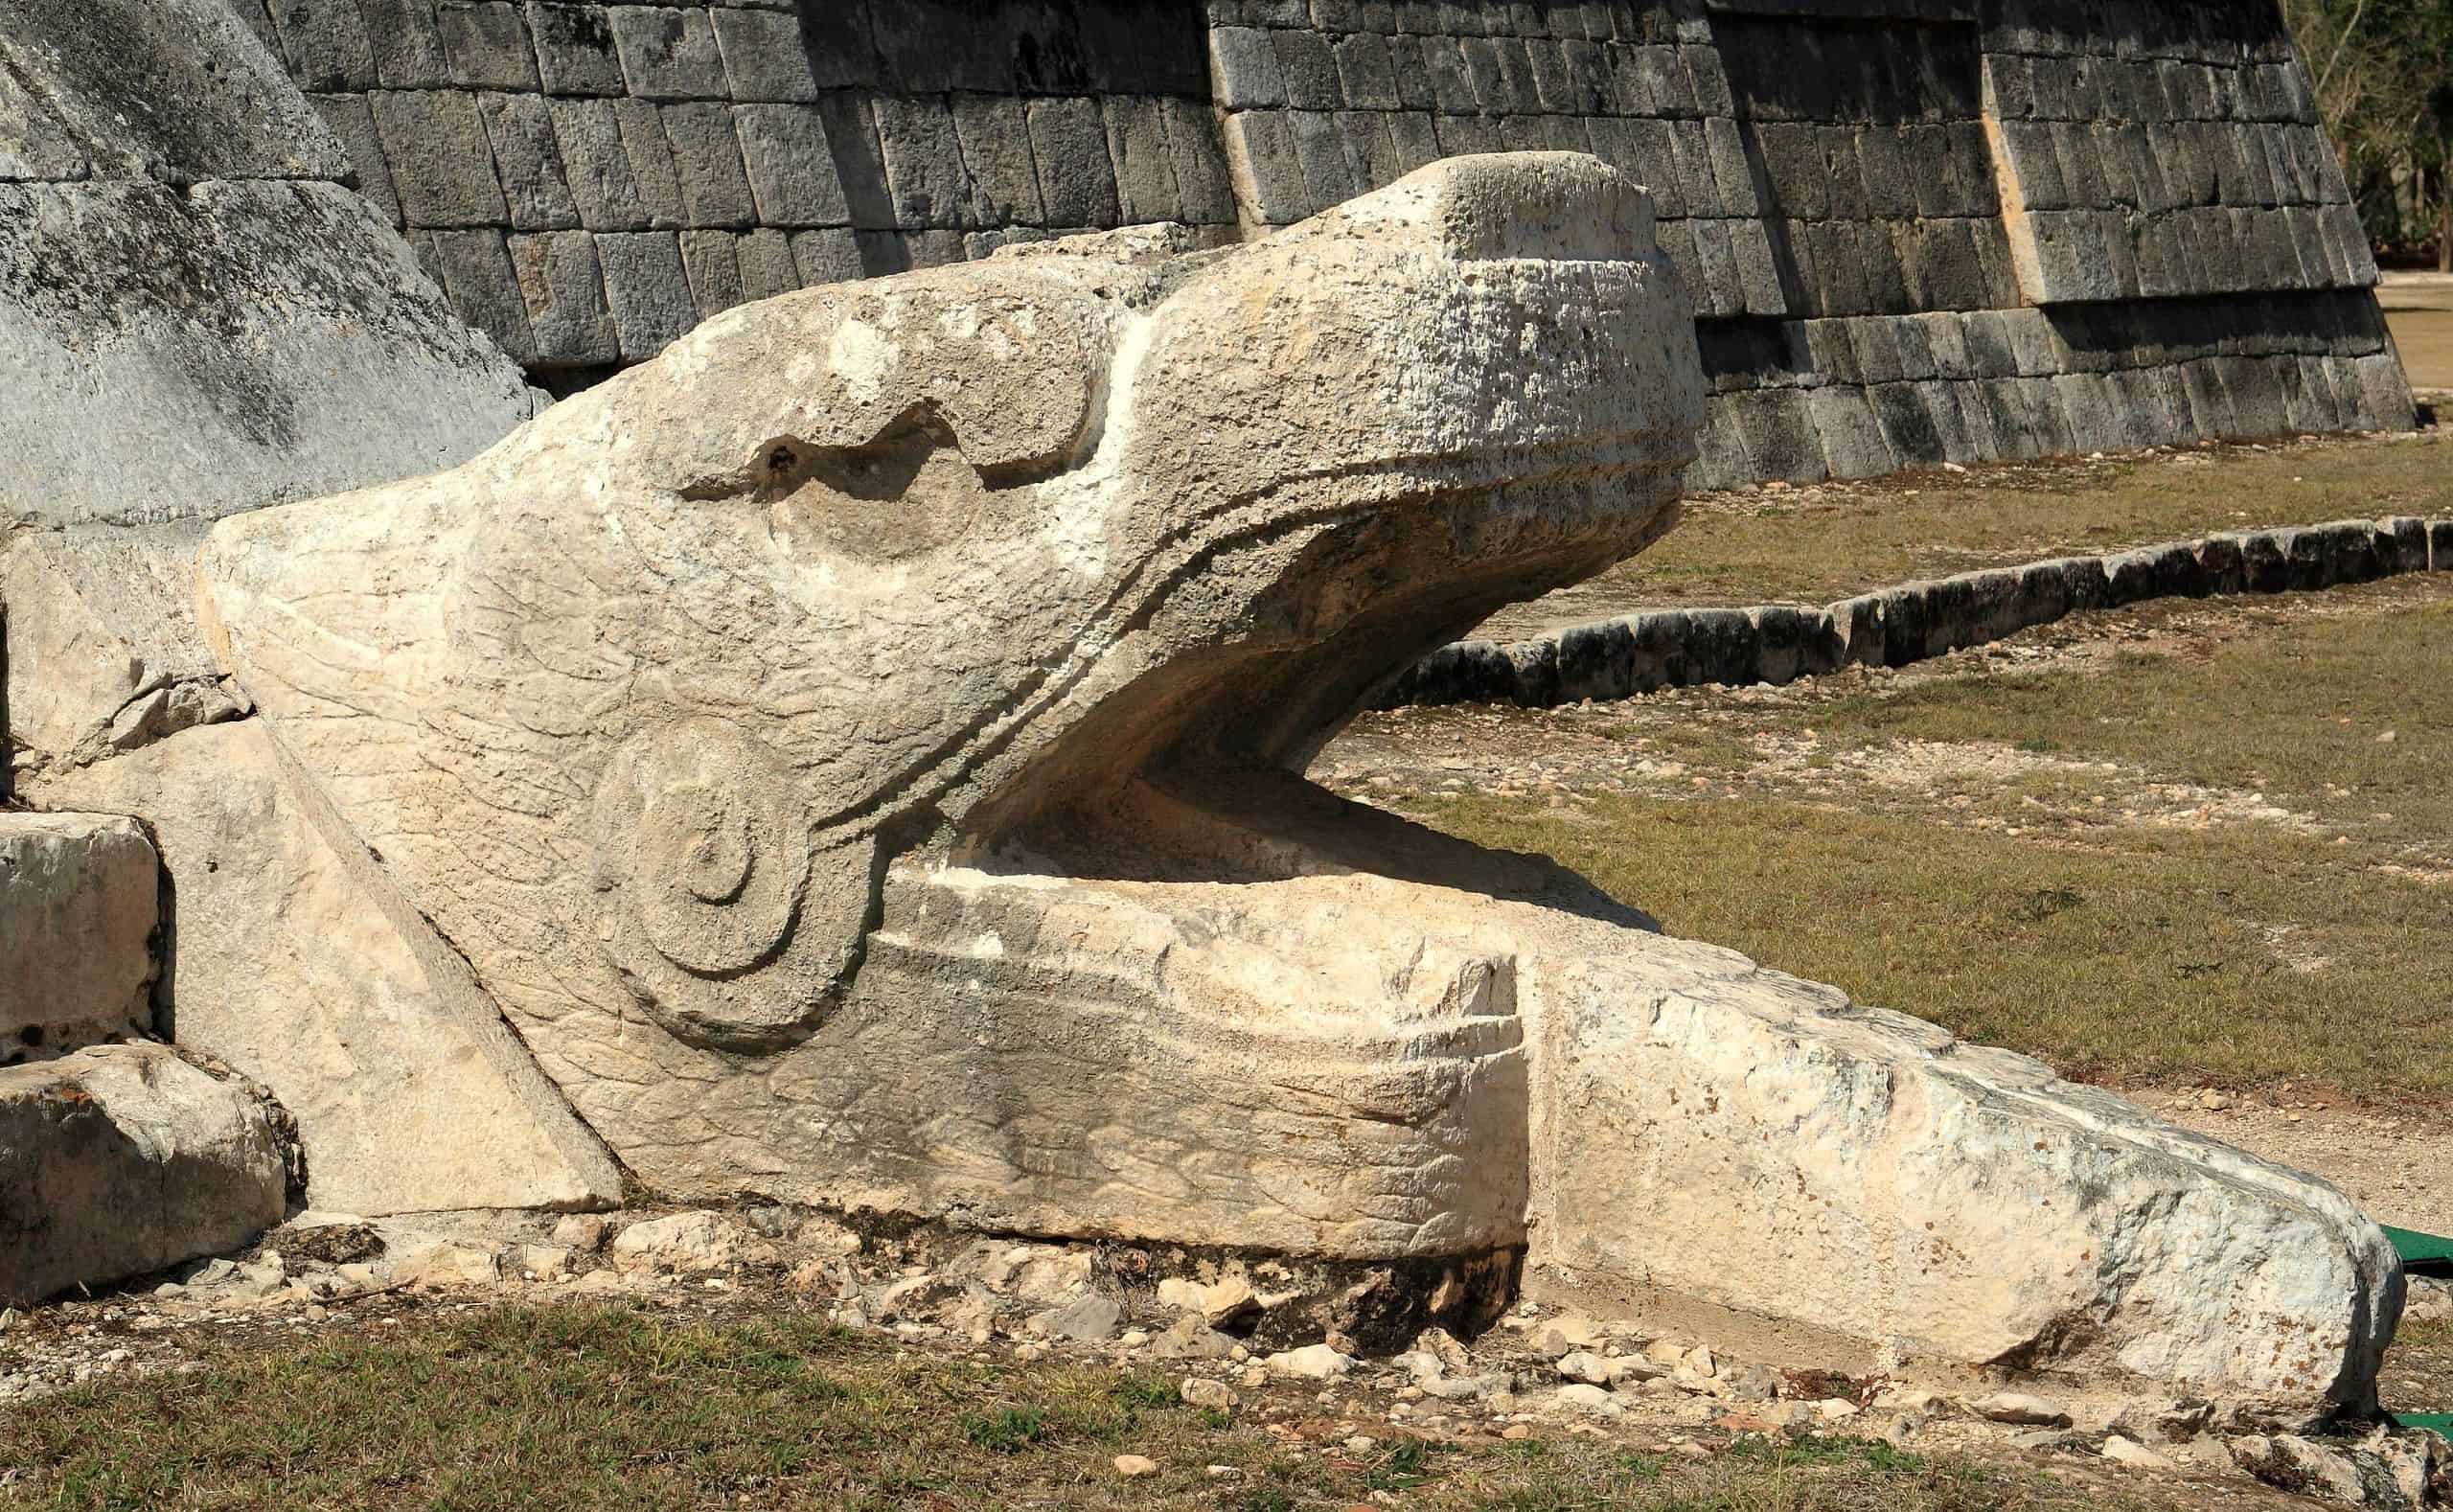 Serpent head at the base of El Castillo